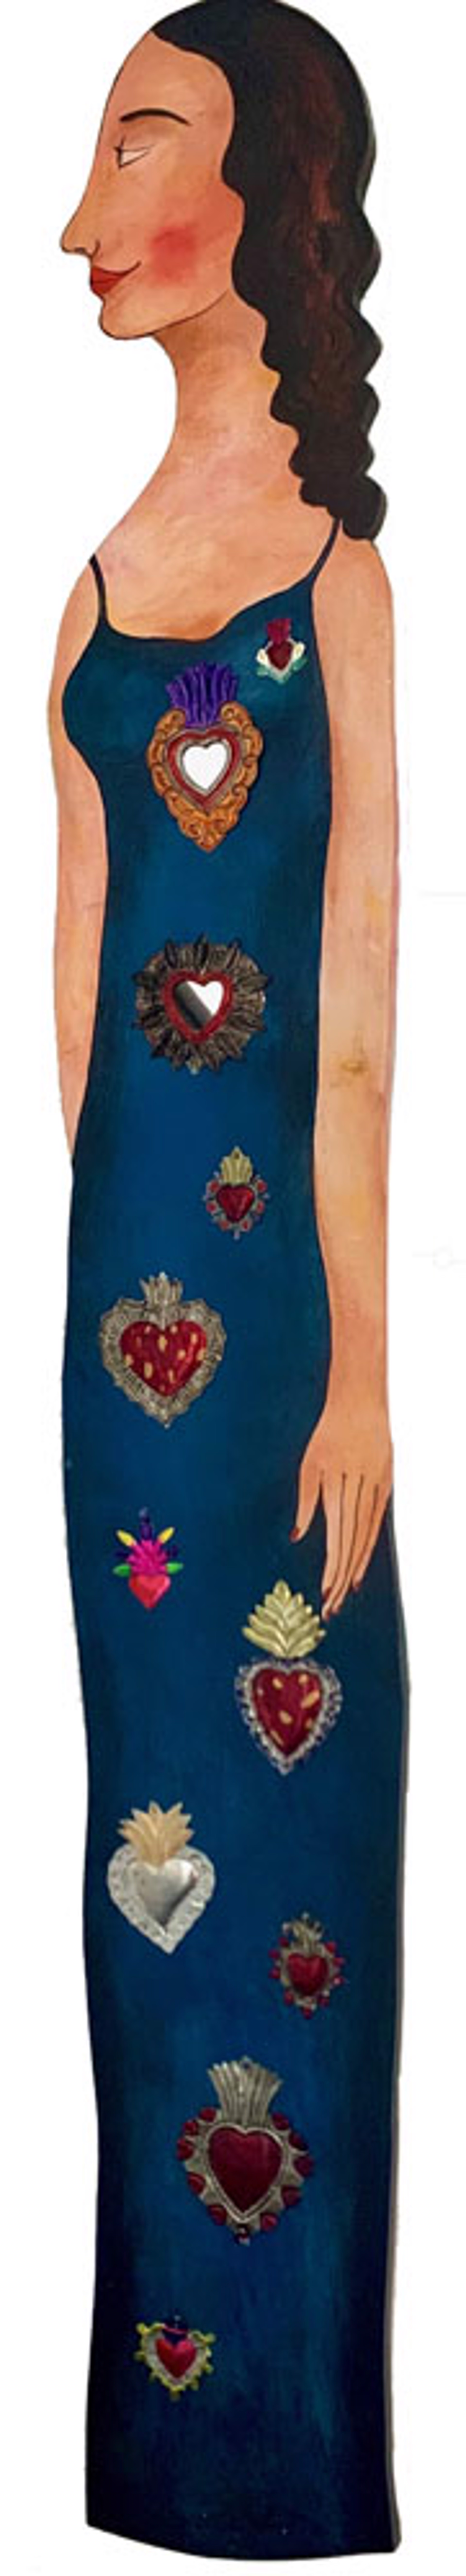 Woman with Hearts by José Ventura